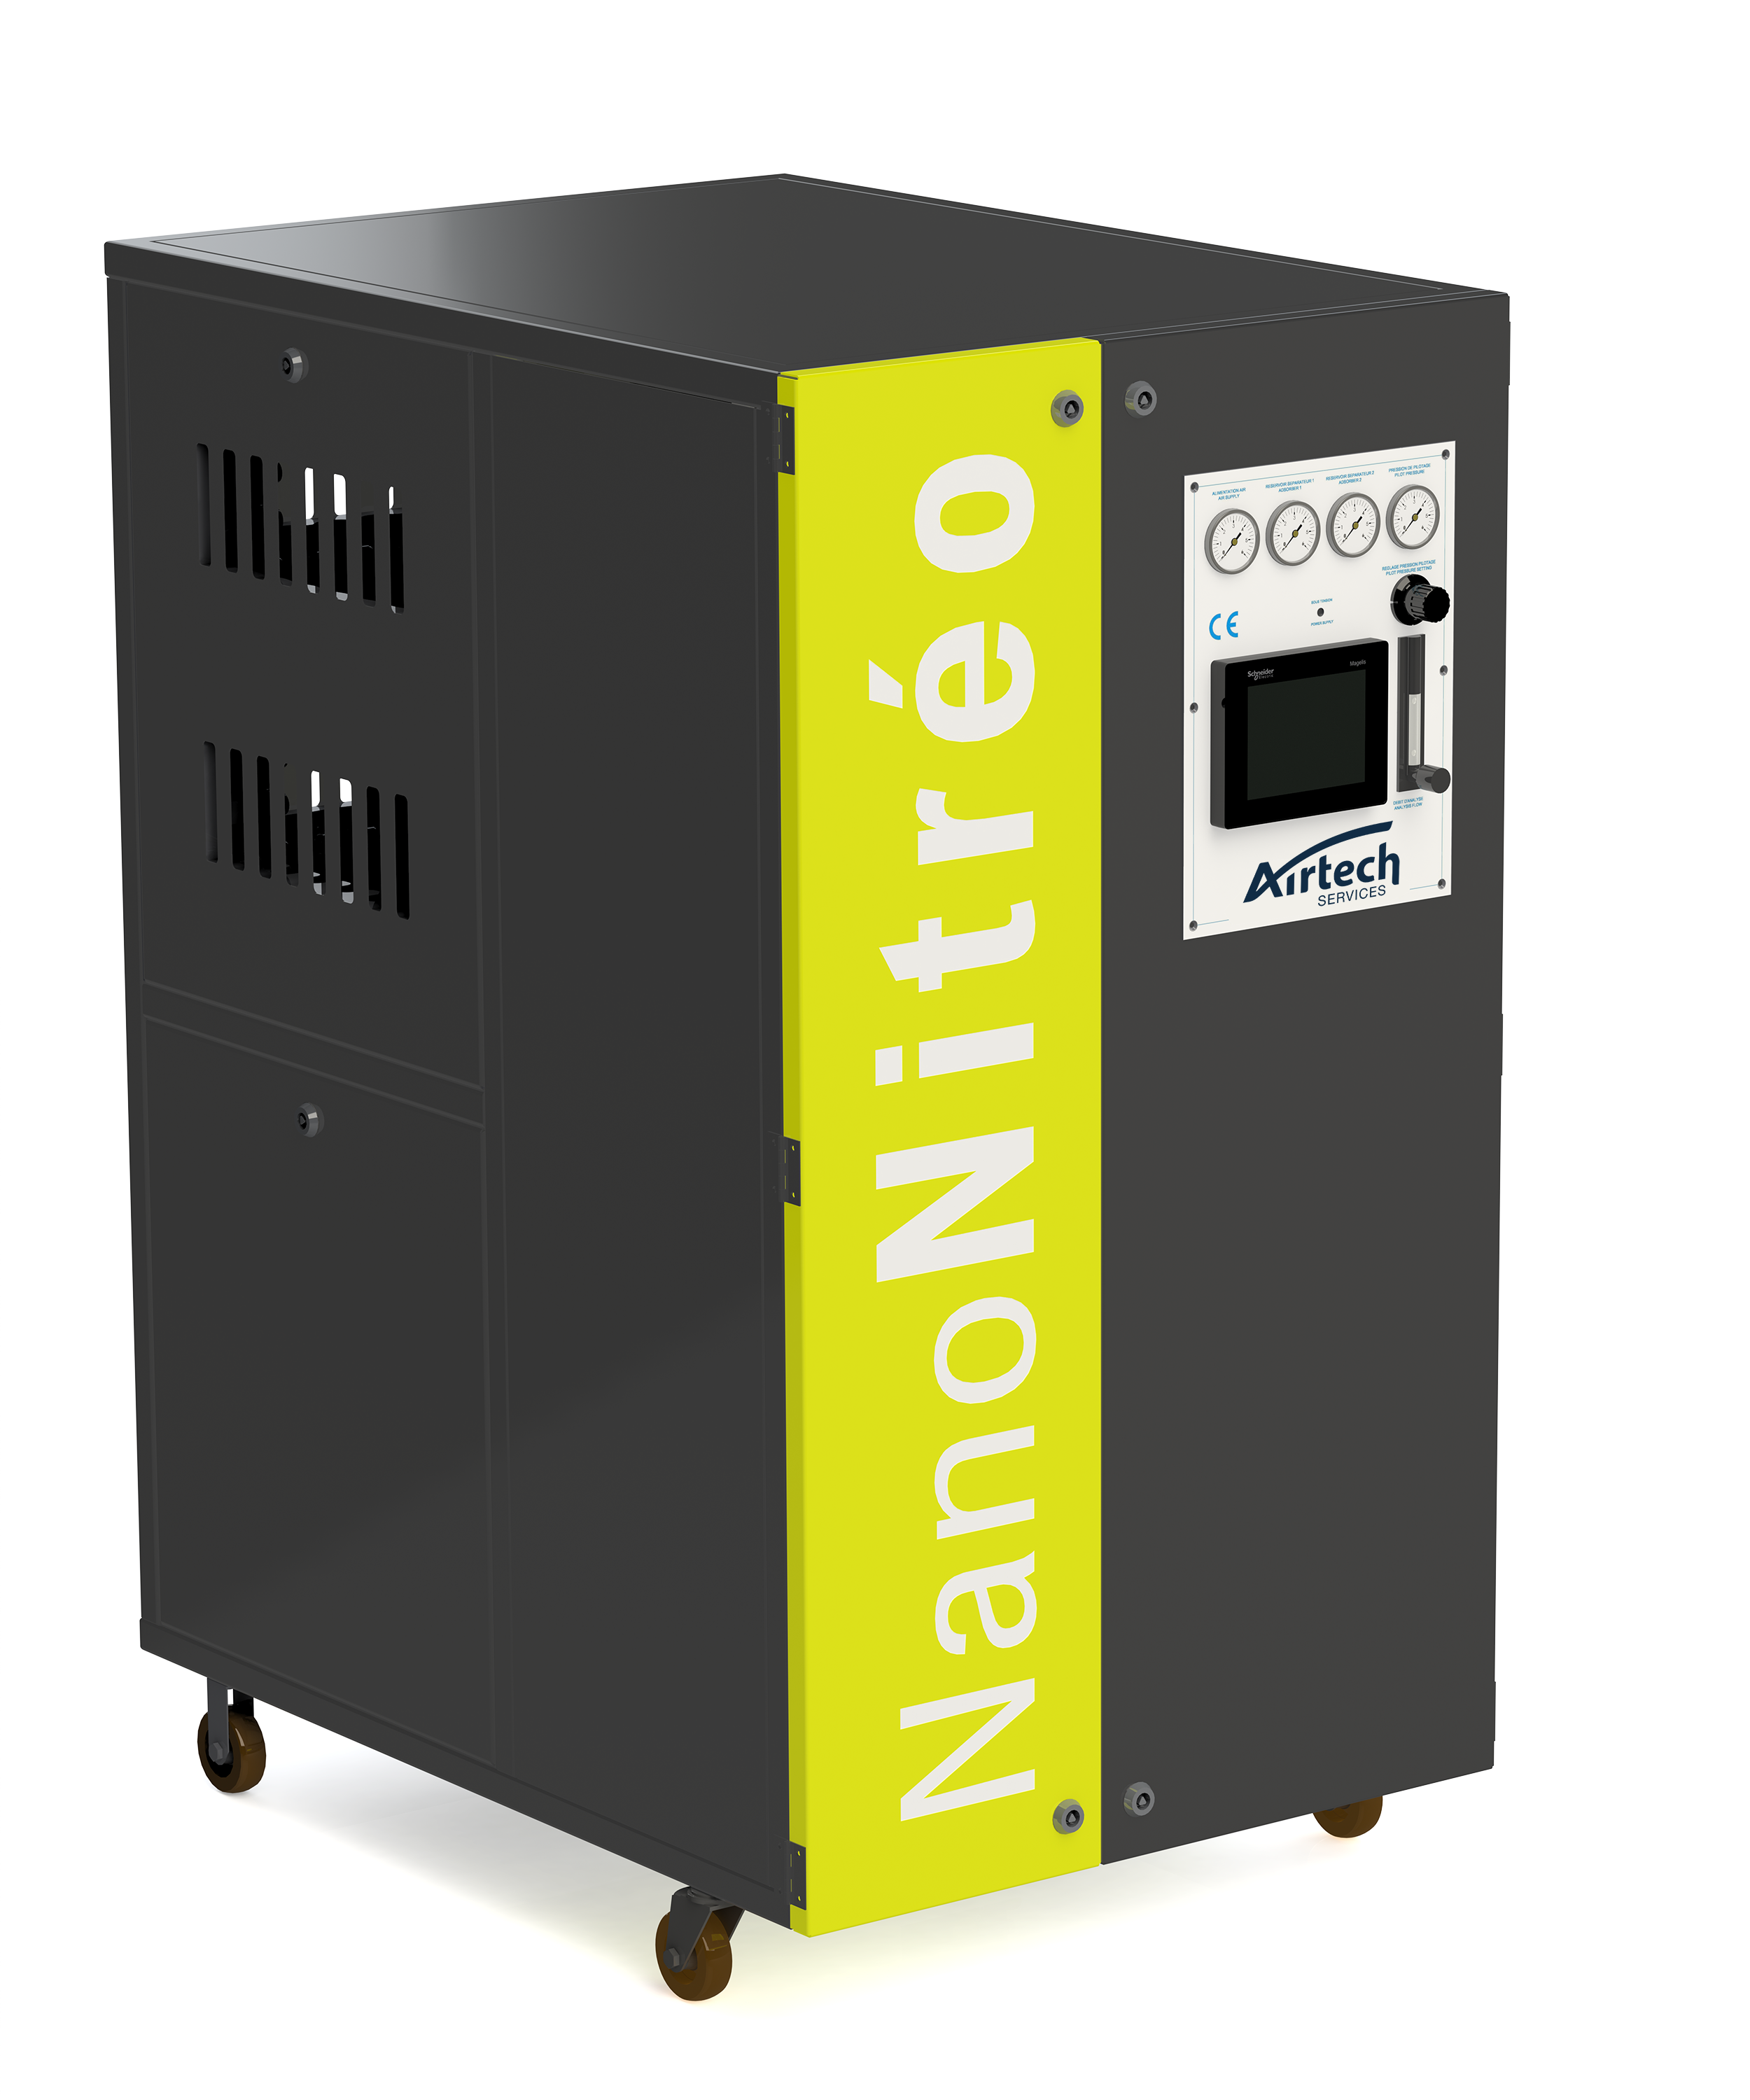 Airtech dévoile son nouveau Générateur d'azote autonome, le NanoNitréo lors  du Salon SITEVI 2019 ! - Airtech Services